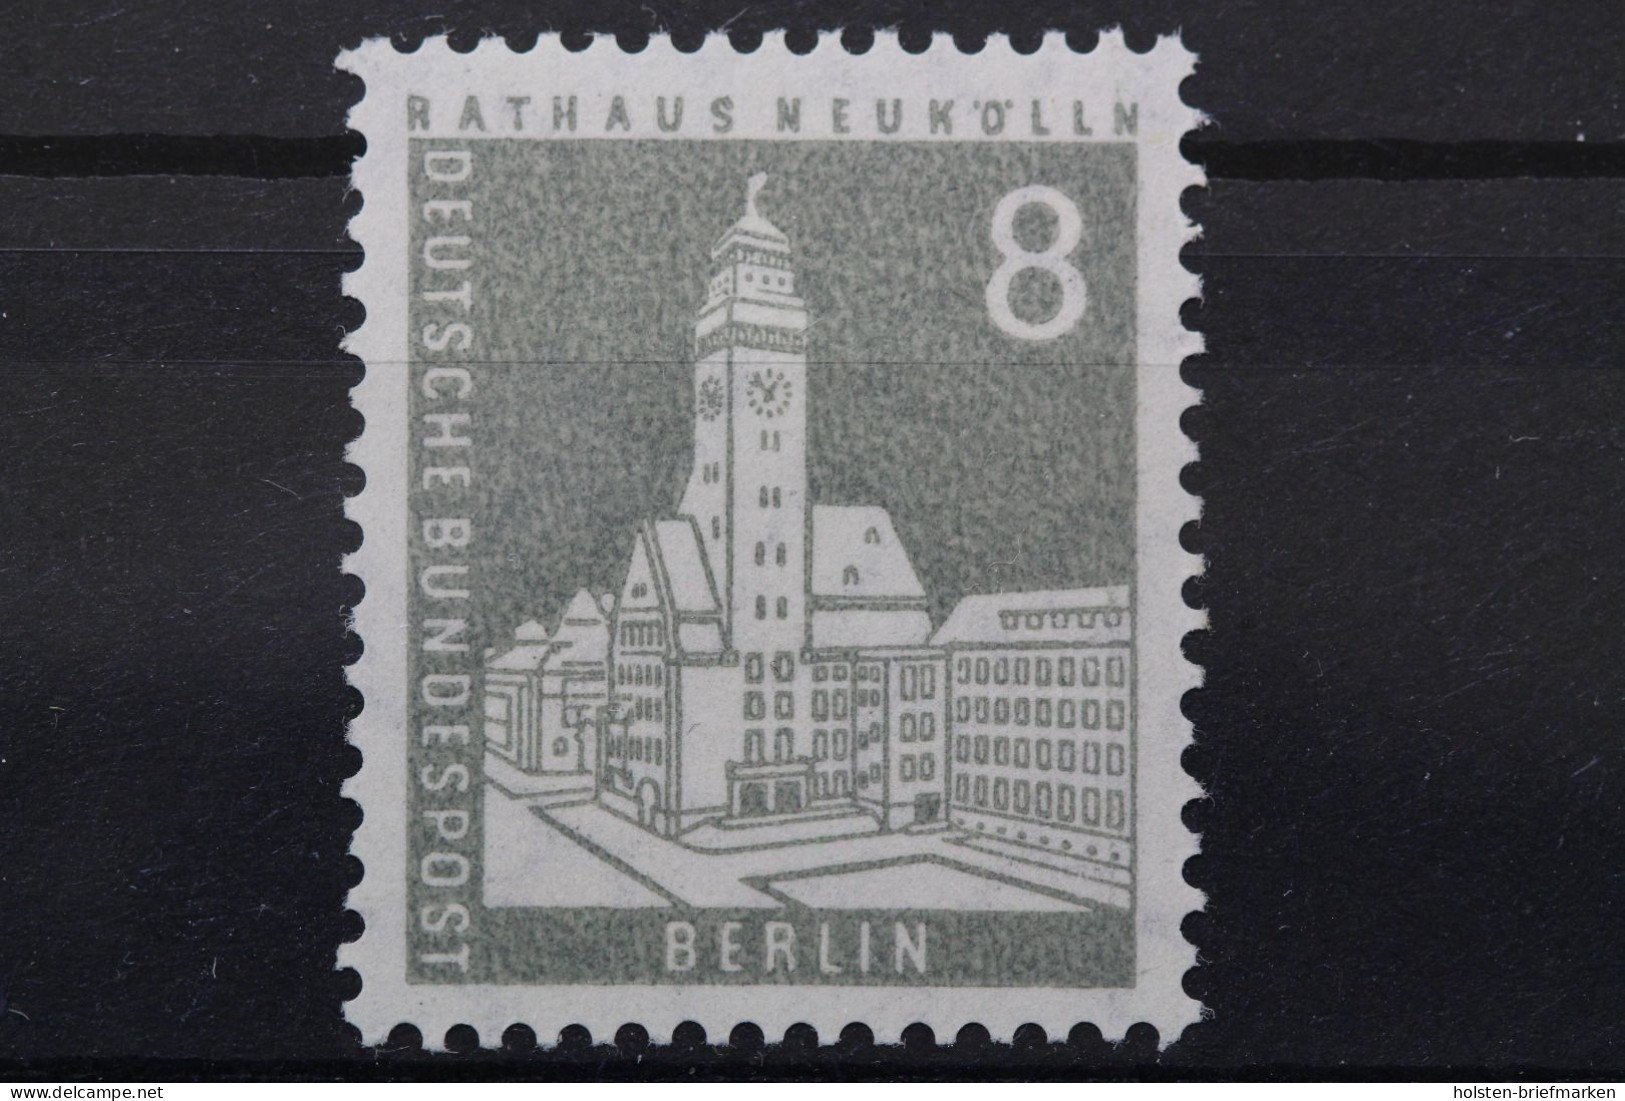 Berlin, MiNr. 143 W V R, Postfrisch - Rollenmarken